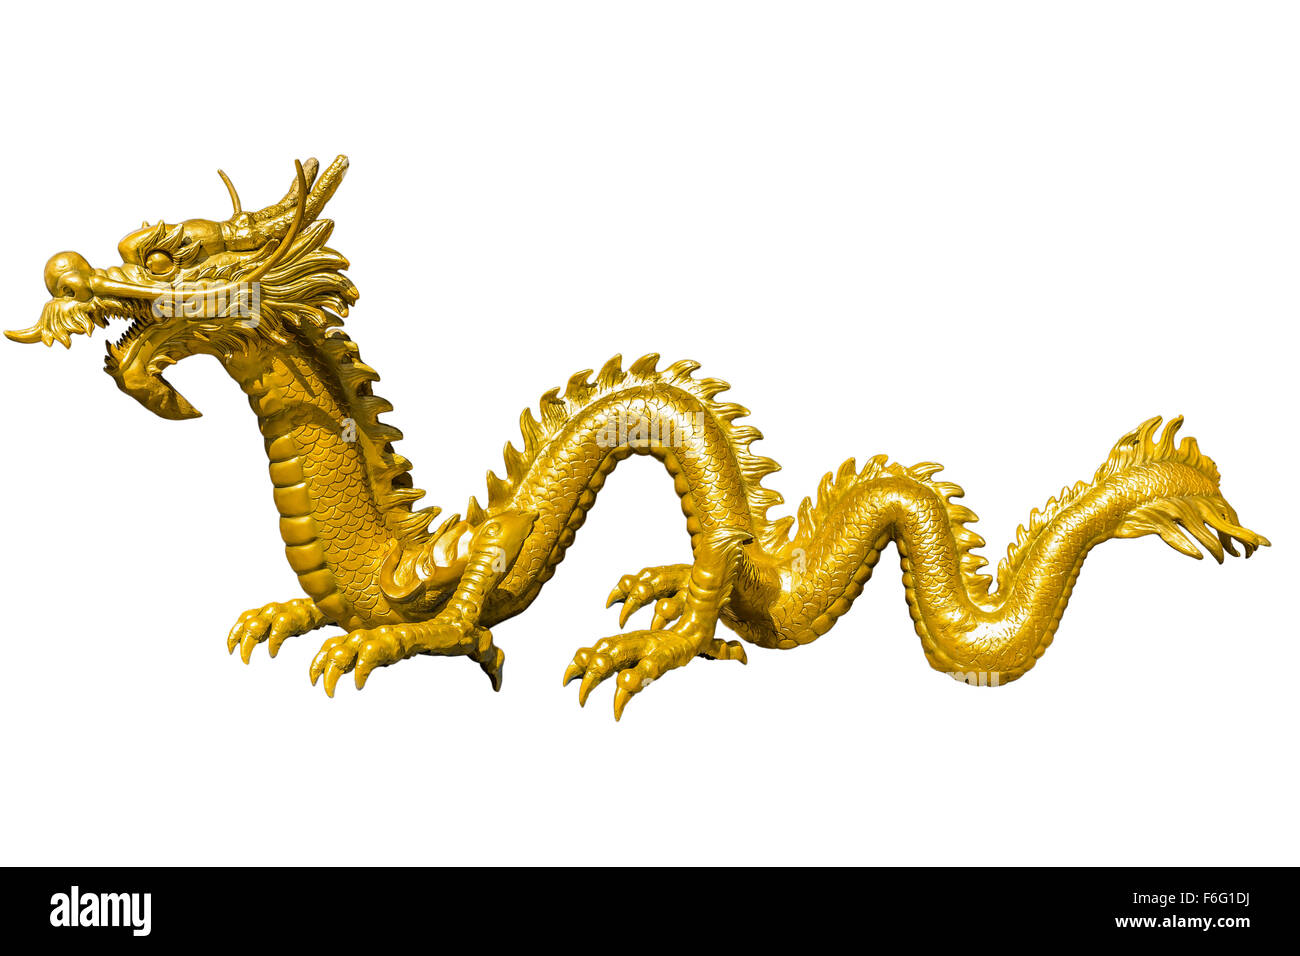 Riesigen goldenen chinesischen Drachen auf isolieren Hintergrund Stockfoto